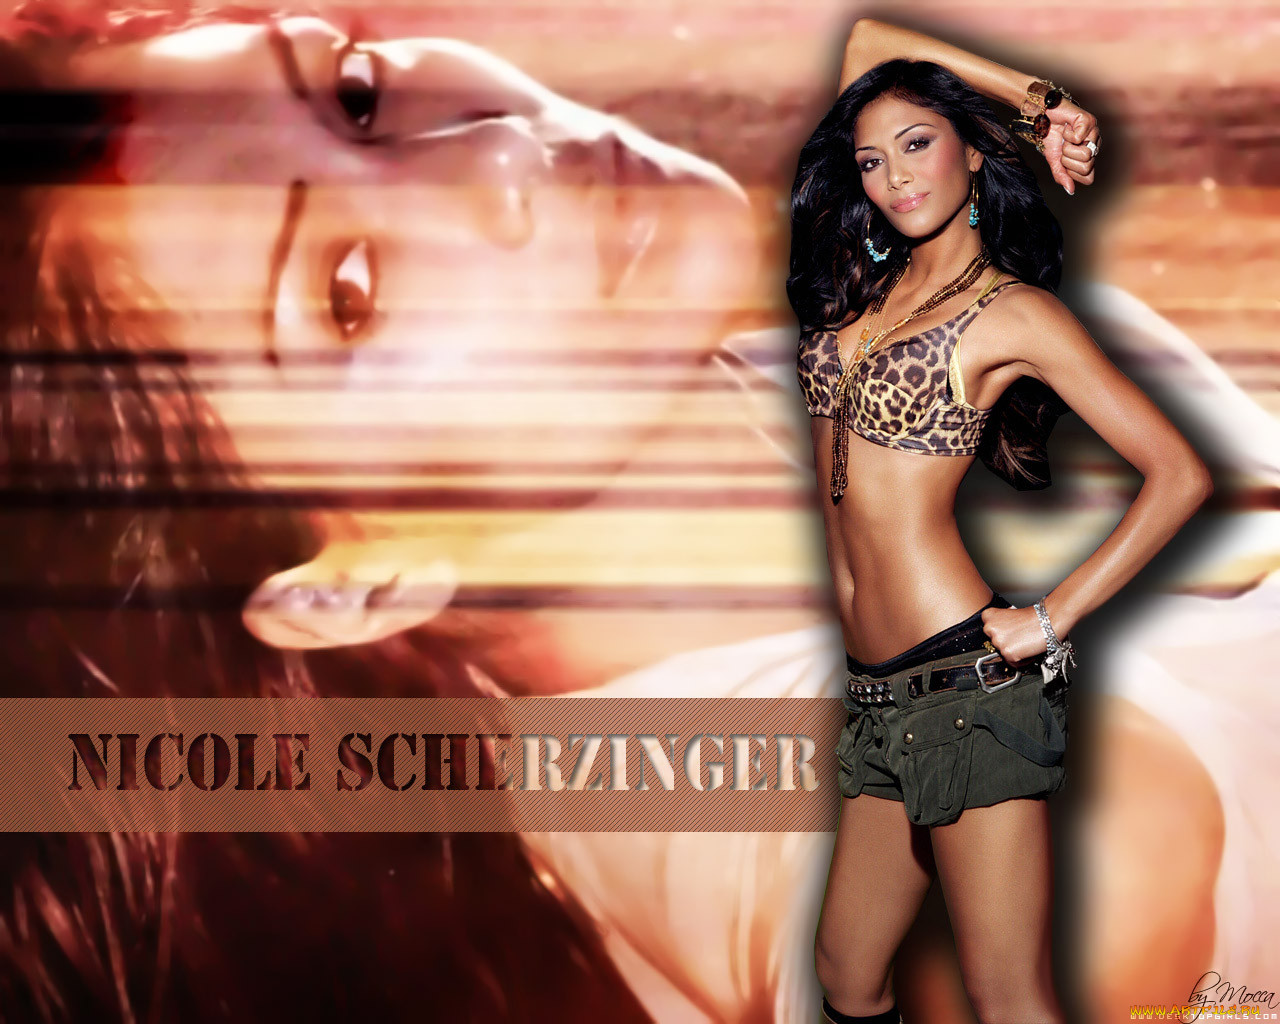 Nicole Scherzinger, 